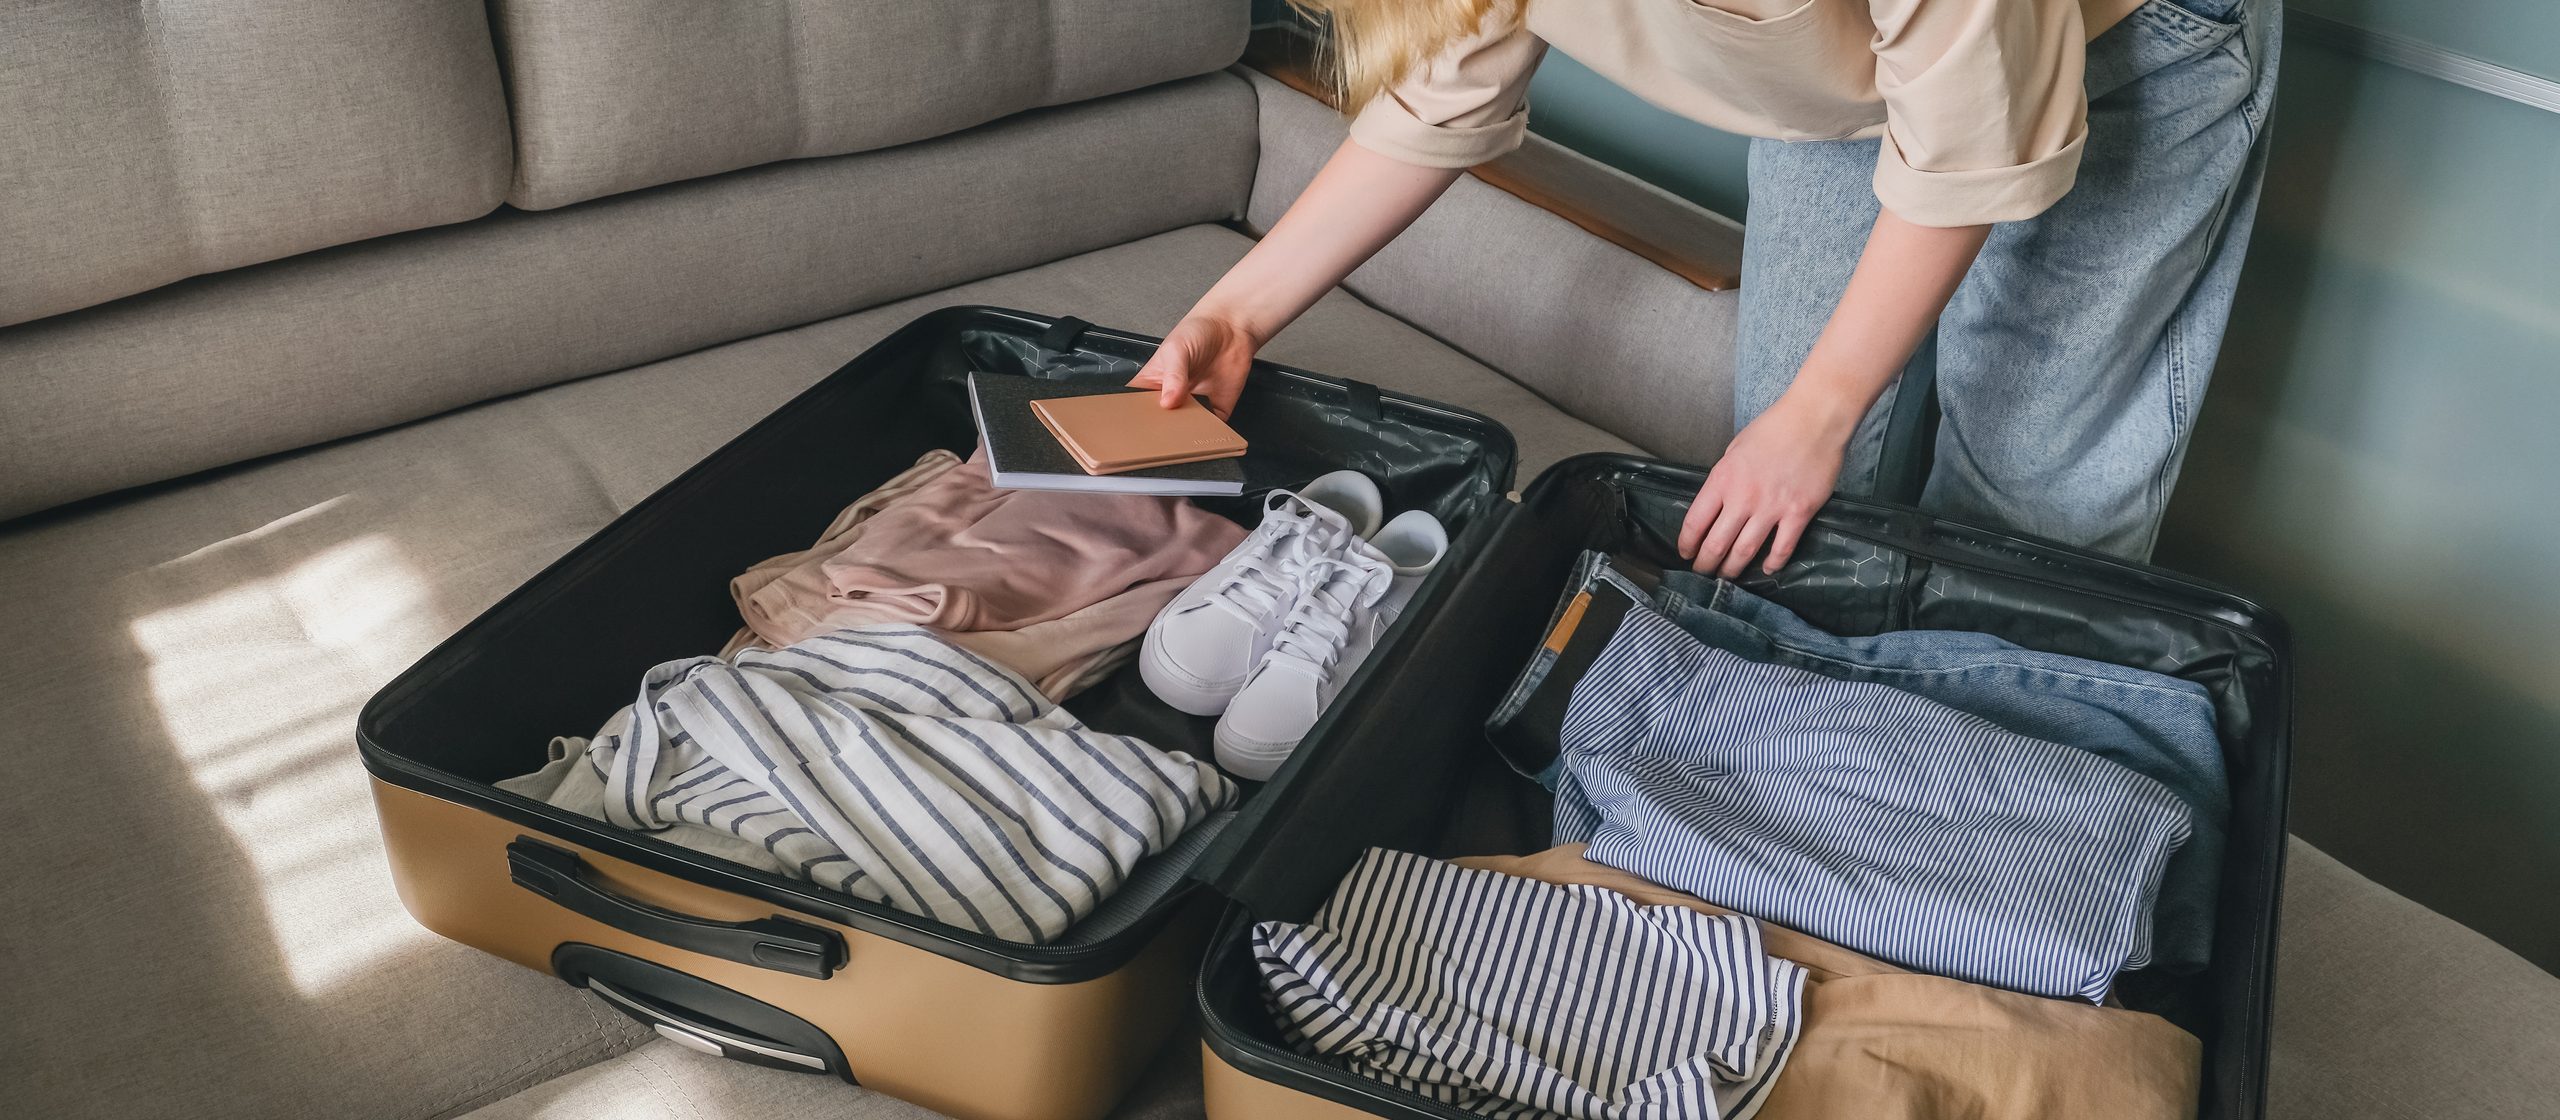 Koffer richtig packen: Tipps vom Profi